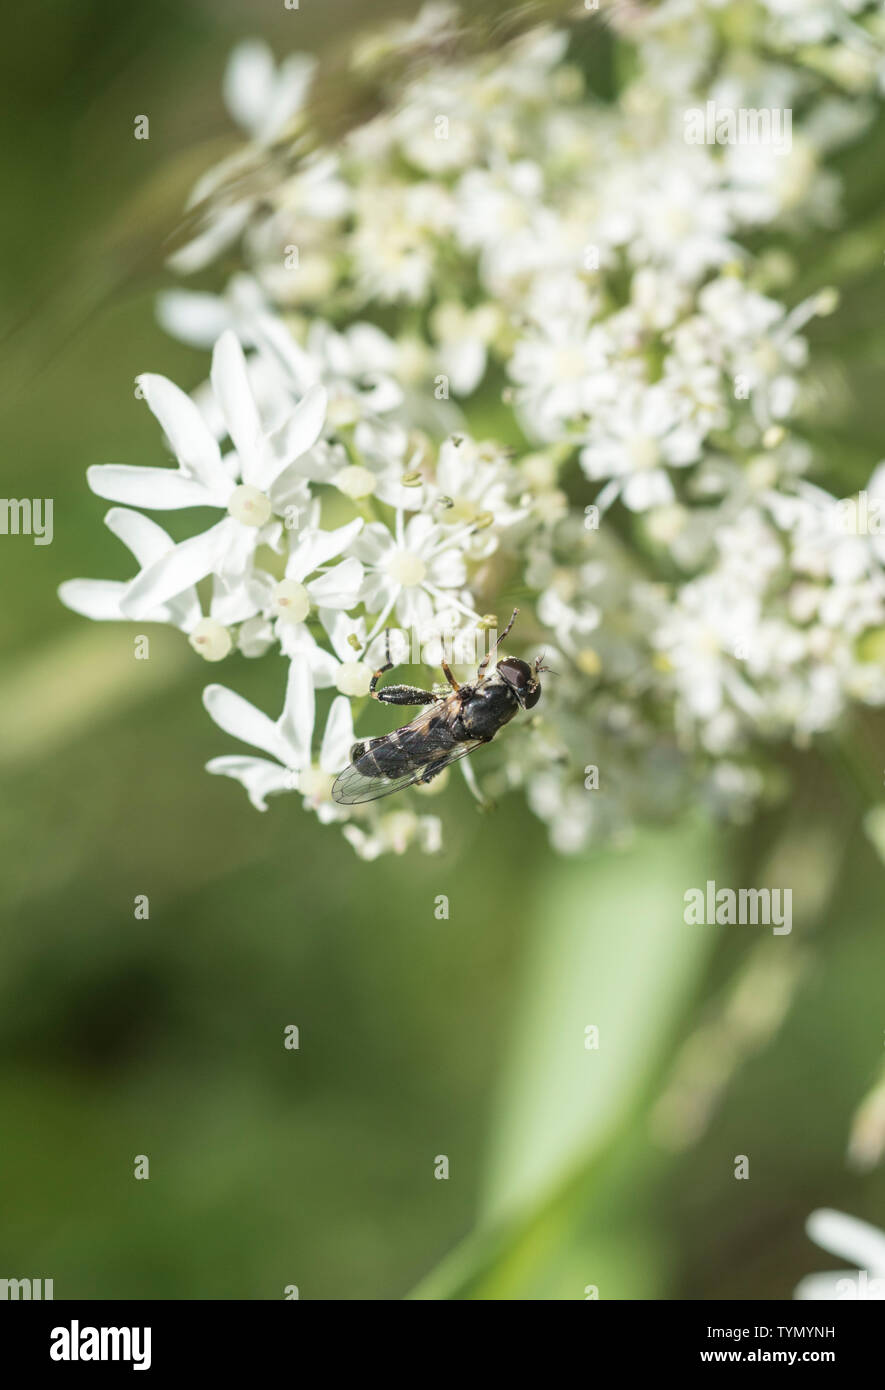 Le Syrrita hoverfly pipiens montrant clairement qu'il épais de diagnostic sur le fémur postérieur Banque D'Images